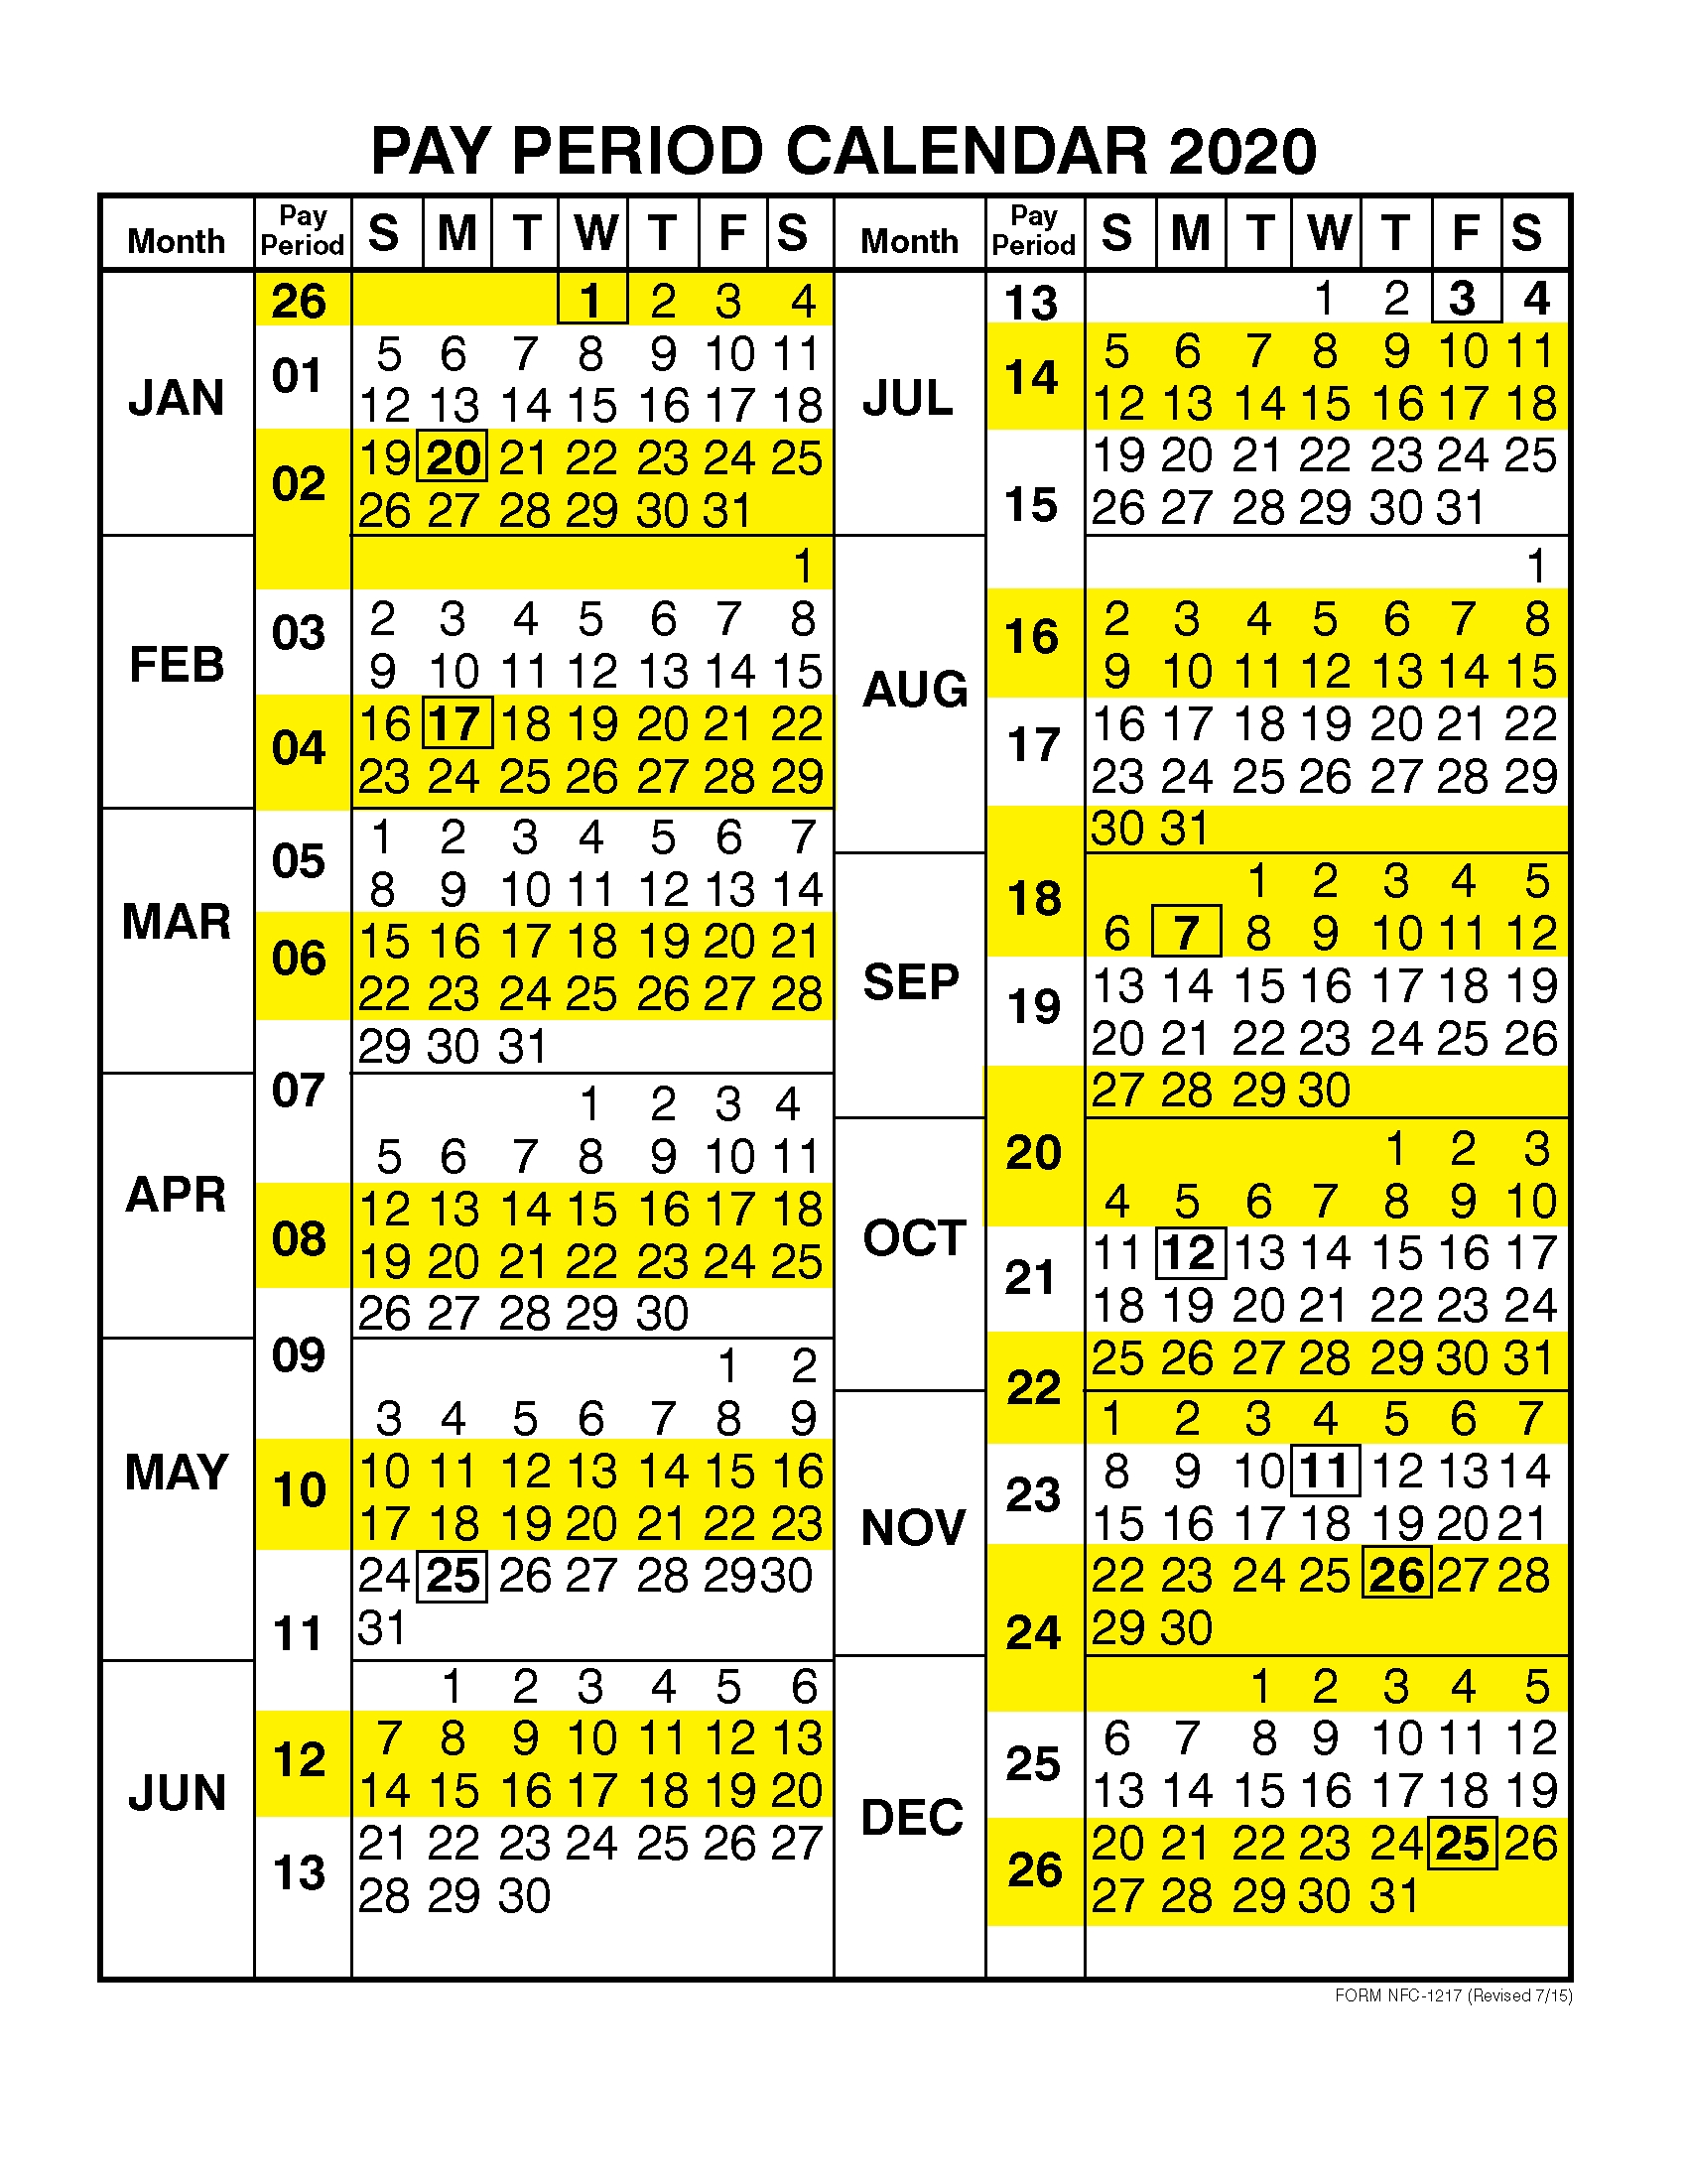 get-2021-payroll-calendar-federal-government-best-calendar-example